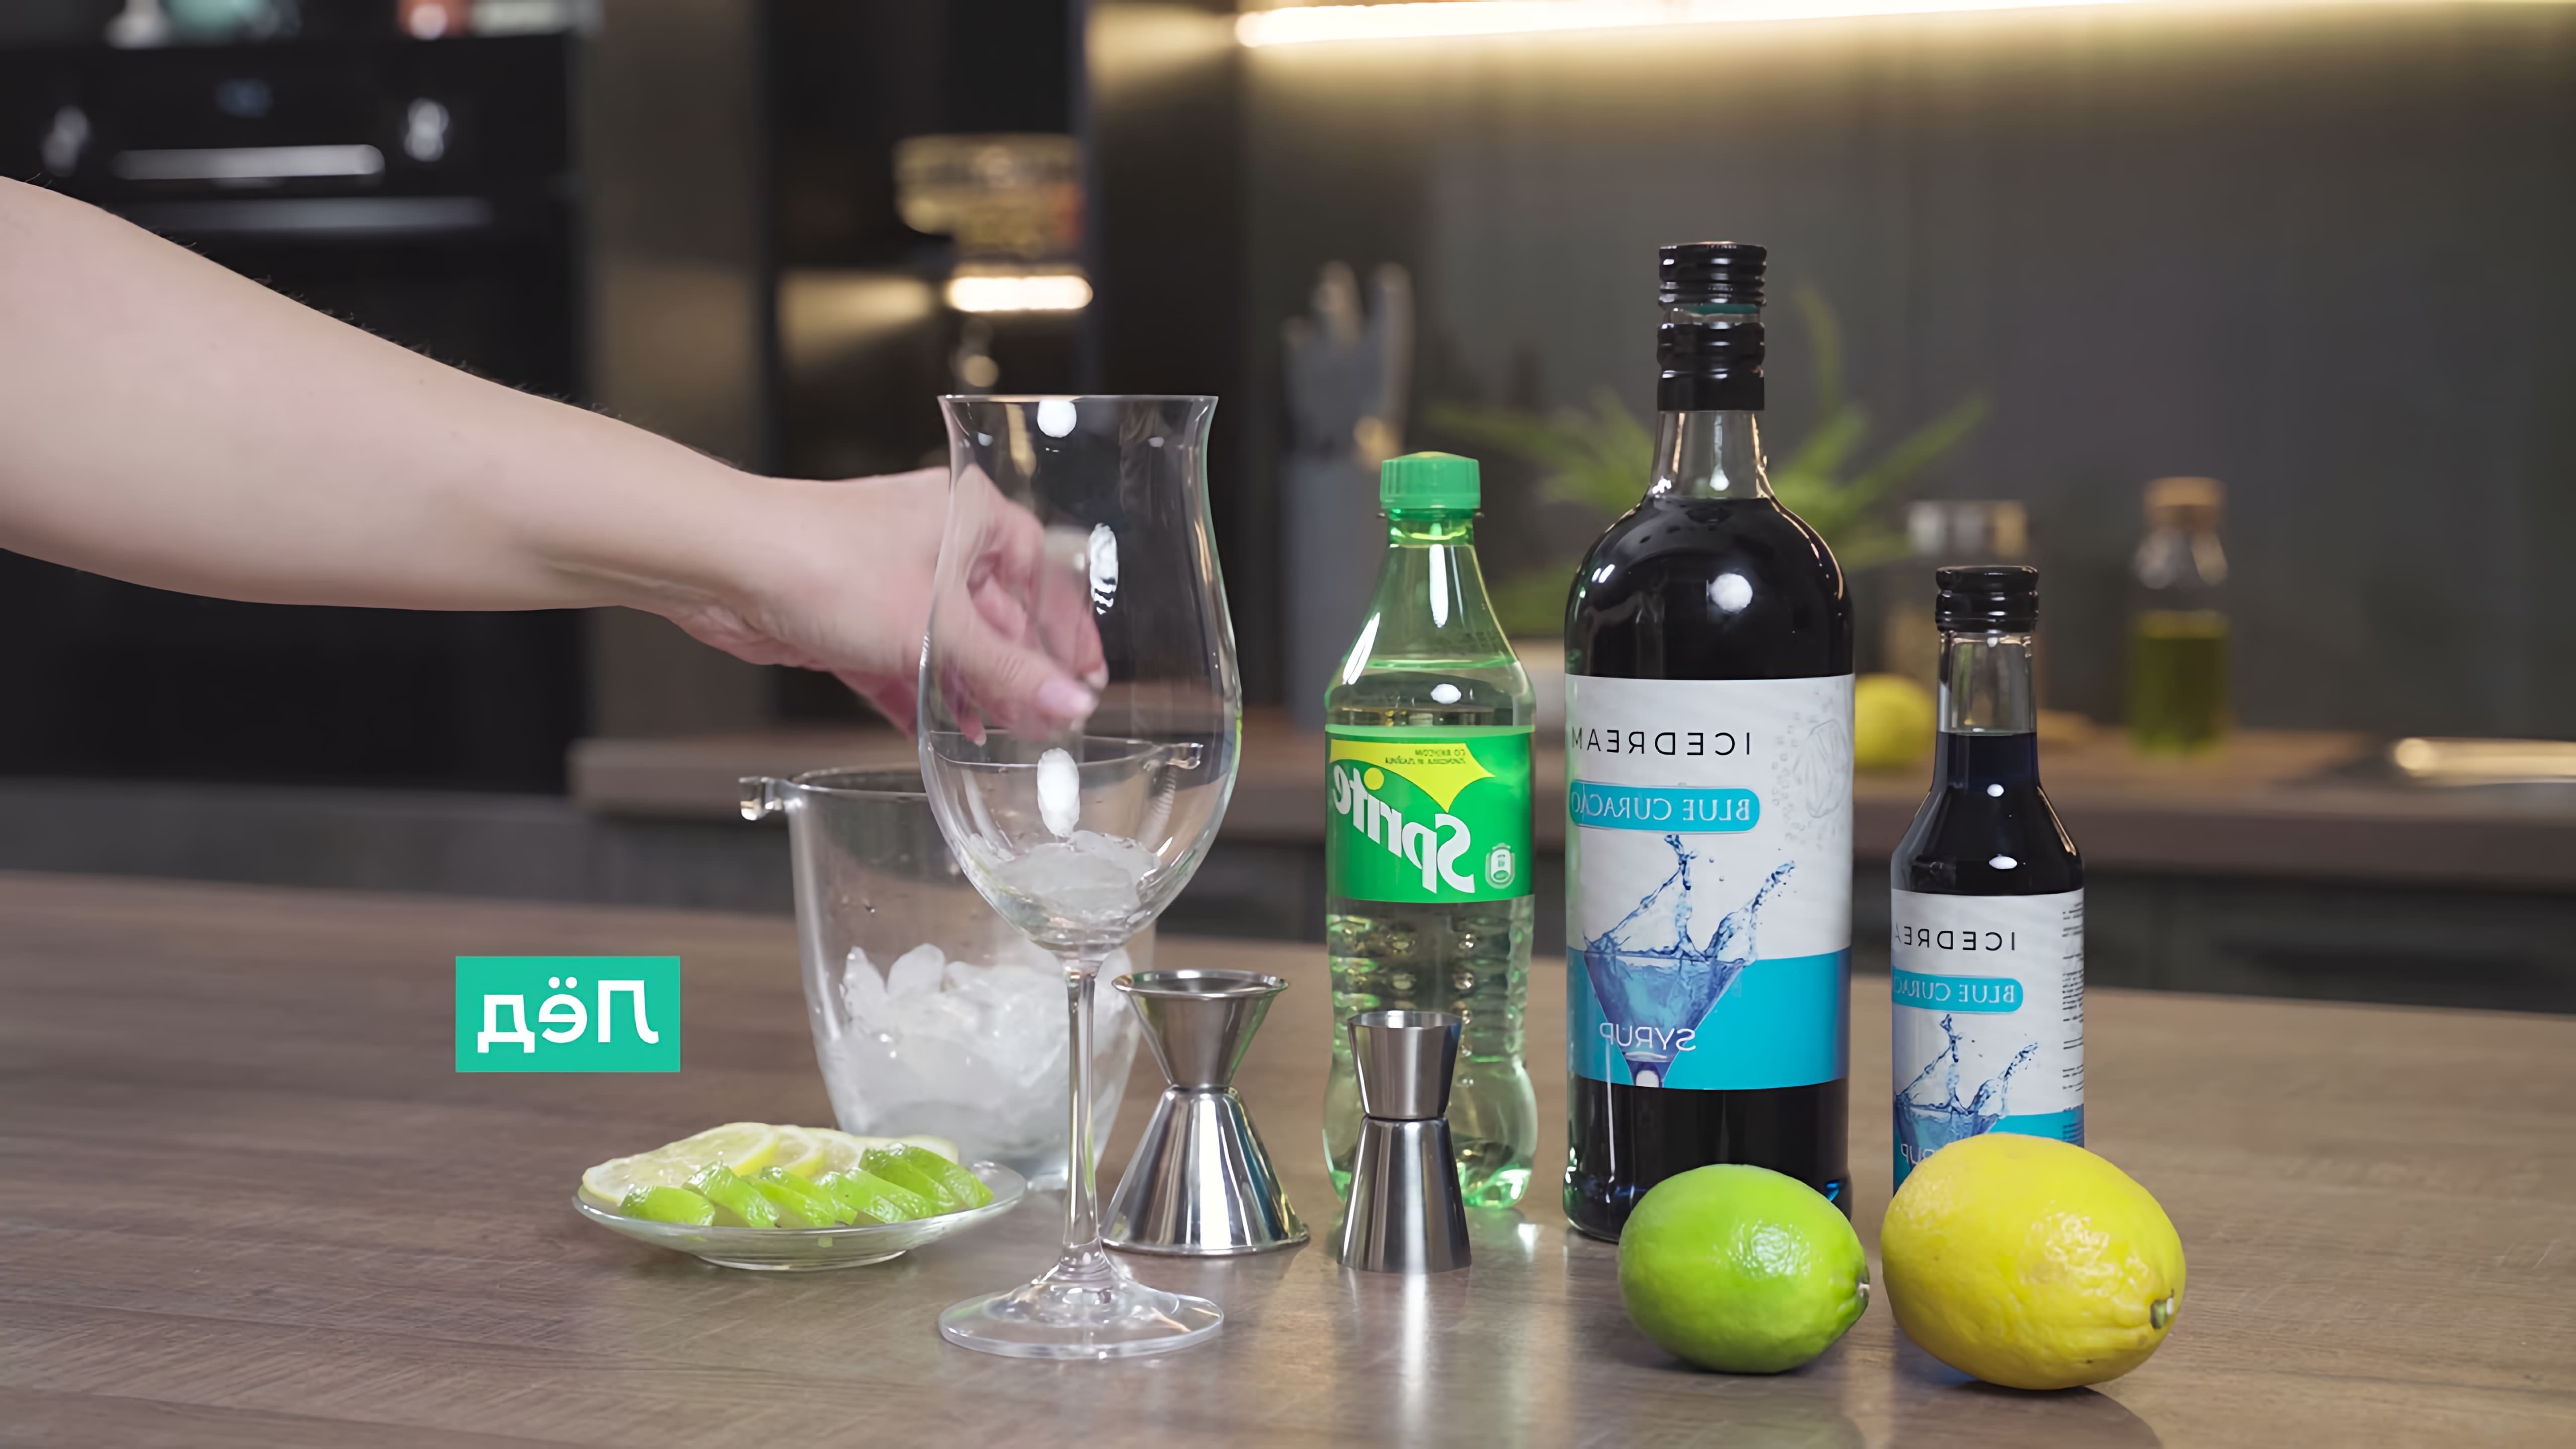 "Рецепт коктейля Голубая лагуна с сиропом Блю Кюрасао от Icedream" - это видео-ролик, который демонстрирует процесс приготовления популярного коктейля "Голубая лагуна" с использованием сиропа Блю Кюрасао от Icedream